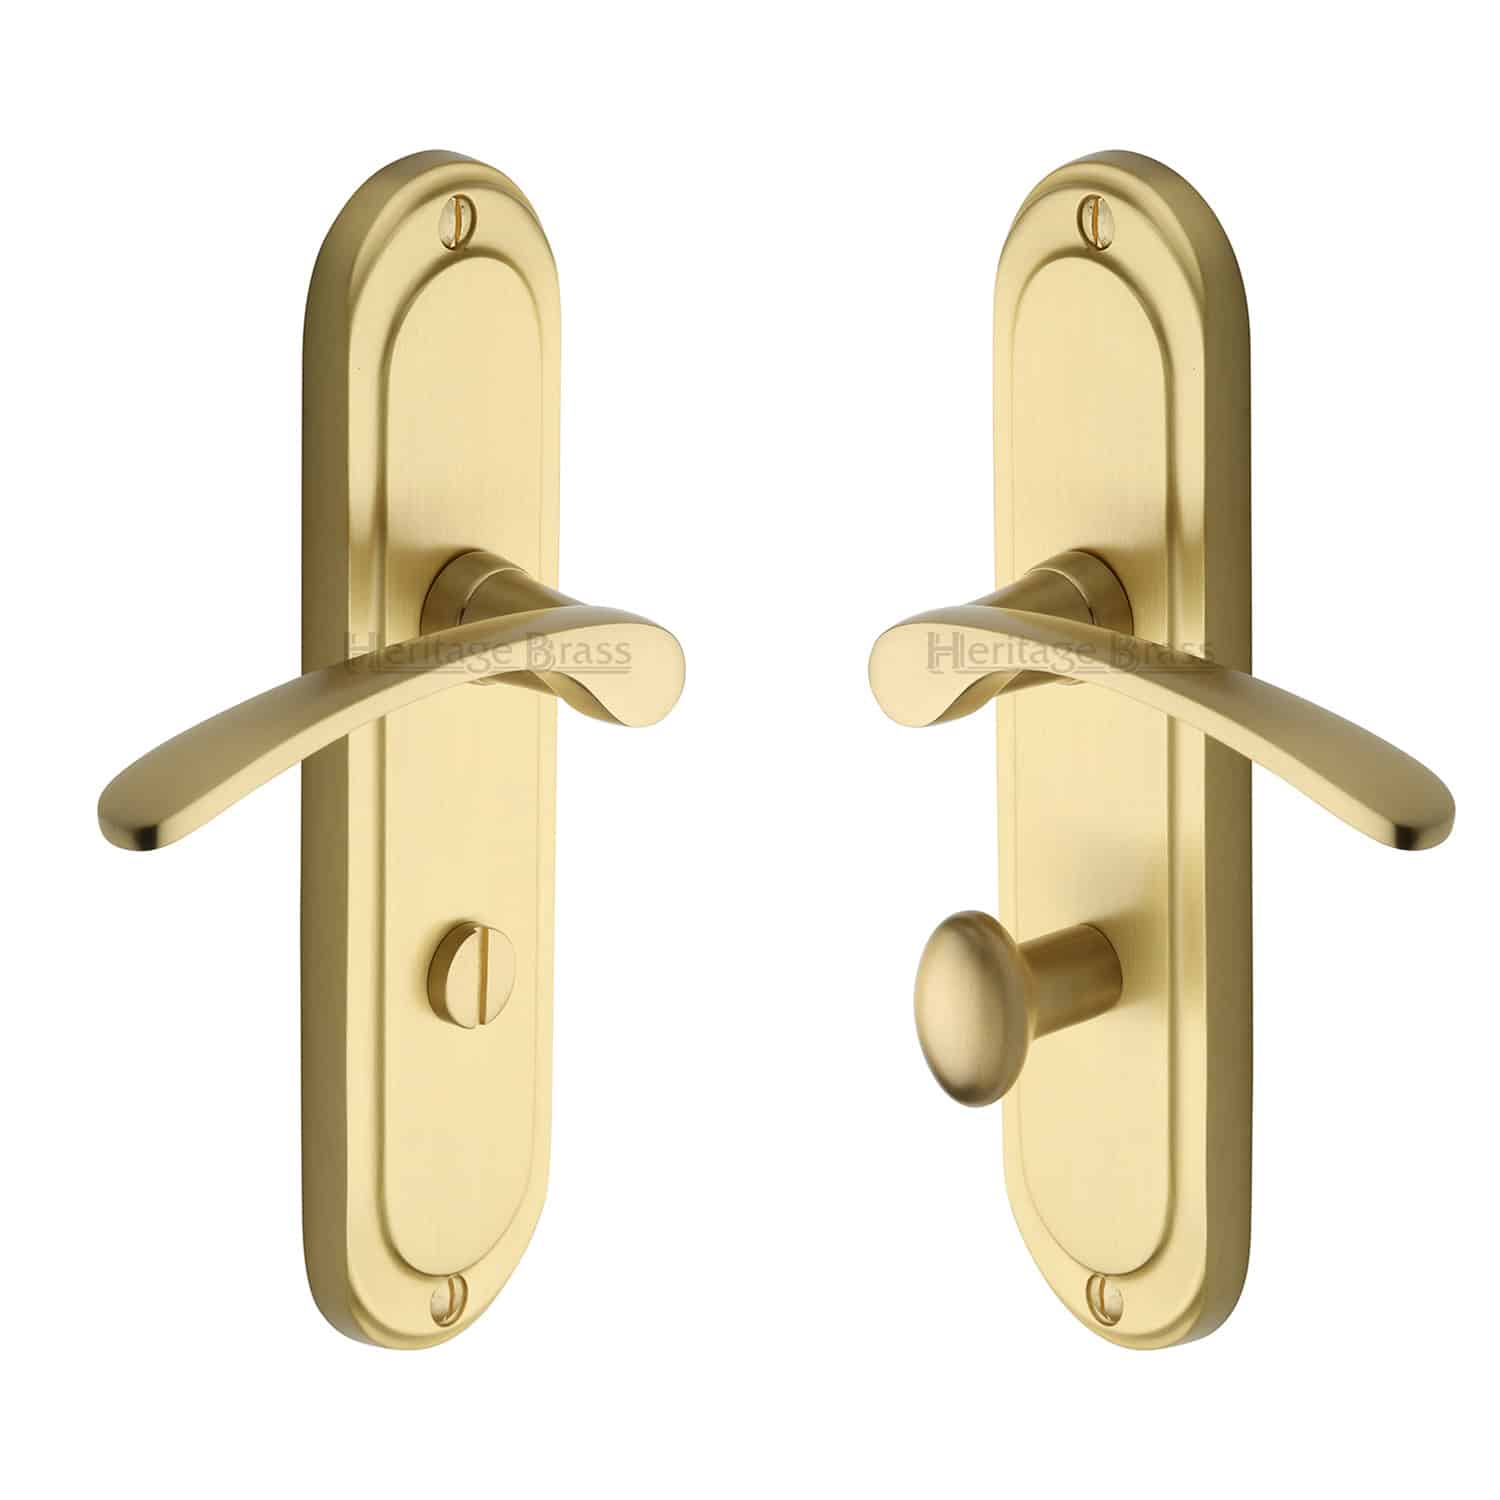 Heritage Brass Door Handle for Bathroom Ambassador Design Satin